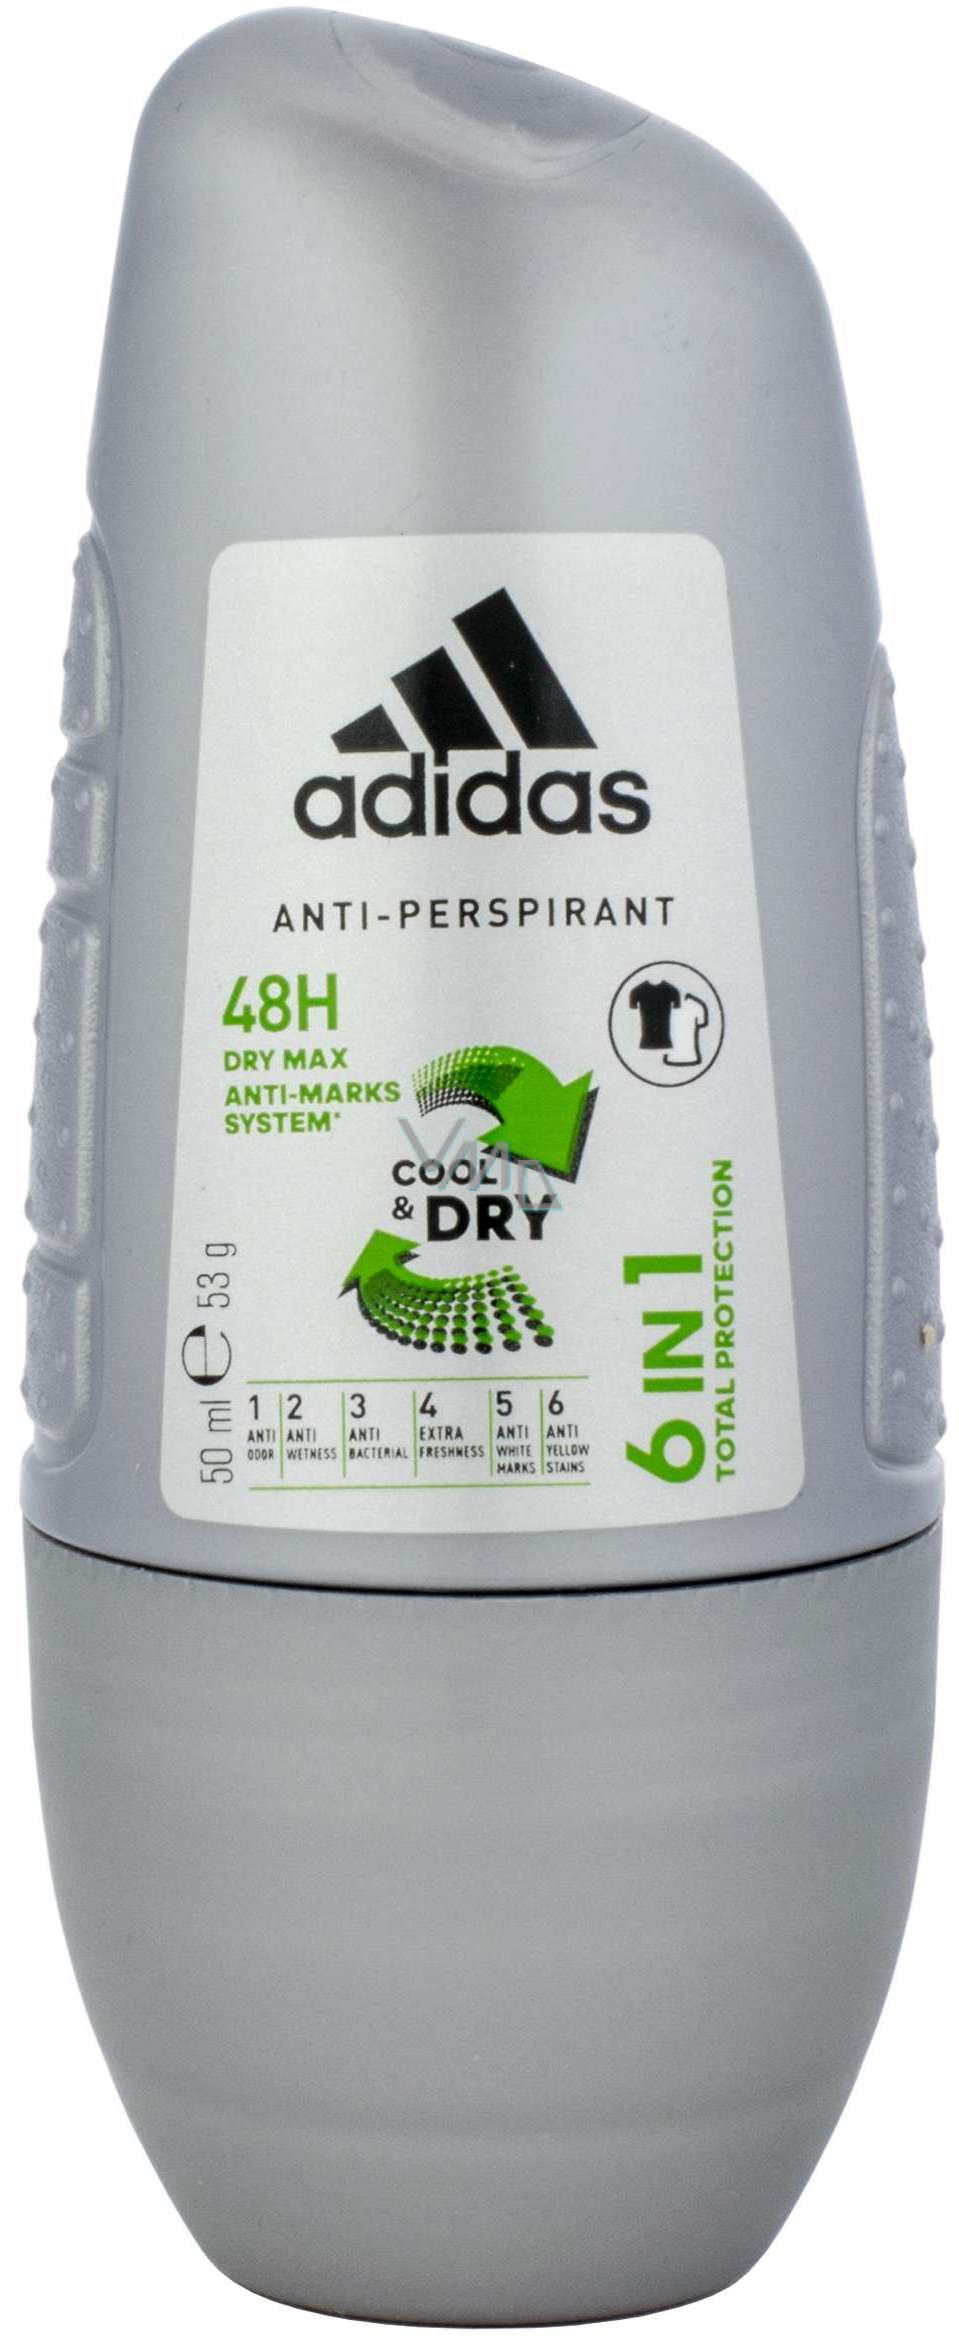 Adidas Cool Dry 48h 6in1 ball antiperspirant deodorant for men 50 ml - VMD parfumerie - drogerie